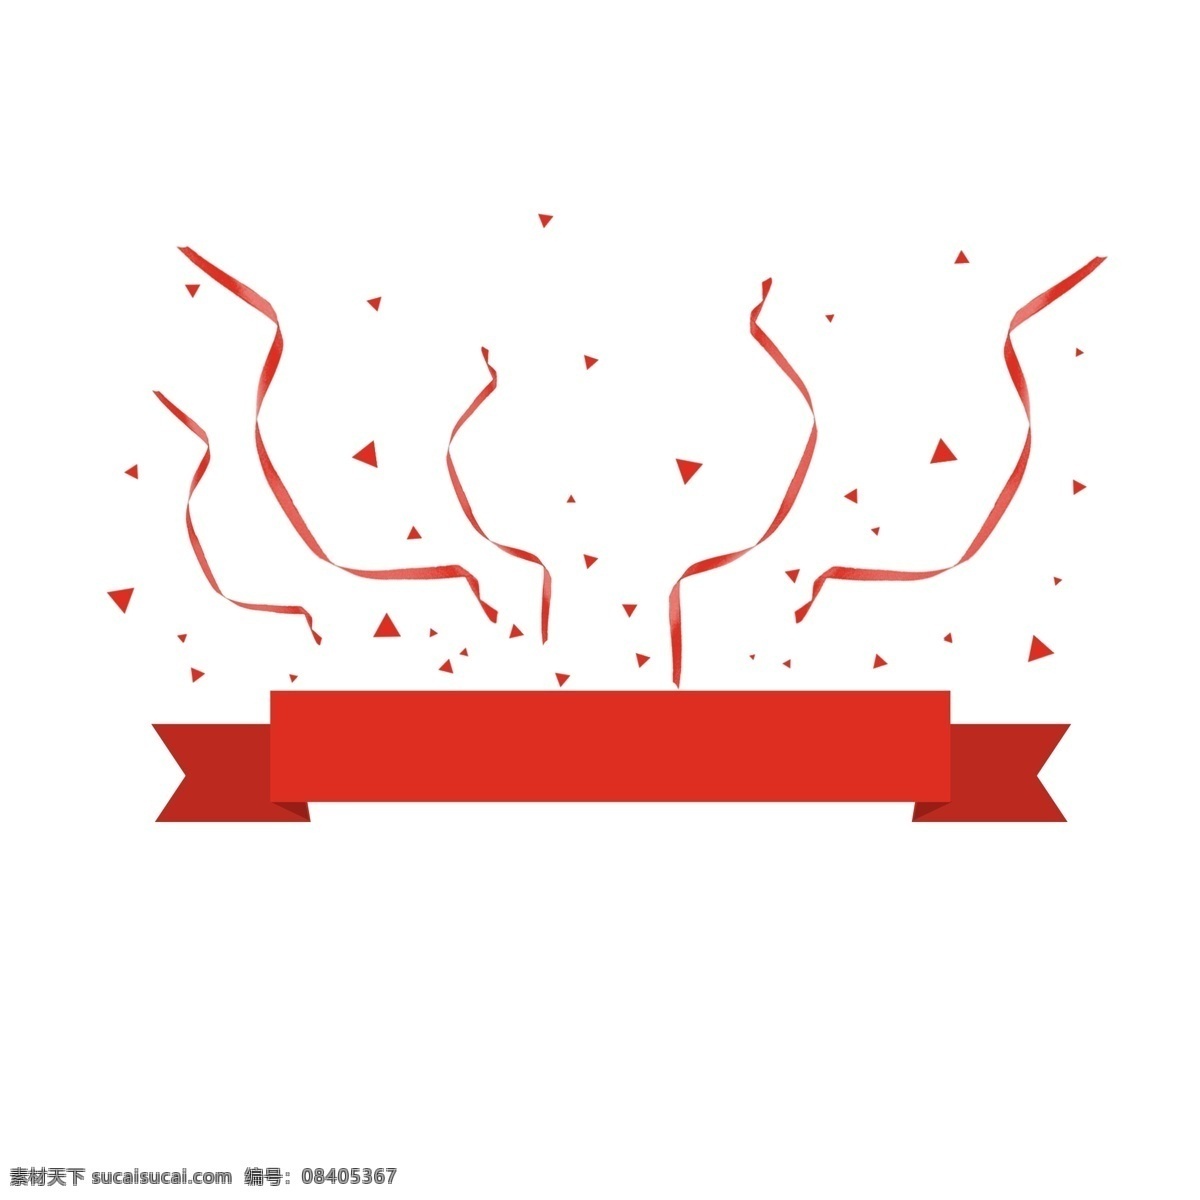 手绘 红色 横幅 彩带 红色横幅 红色丝带 装饰 节日装饰 促销 电商 漂浮 漂浮彩带